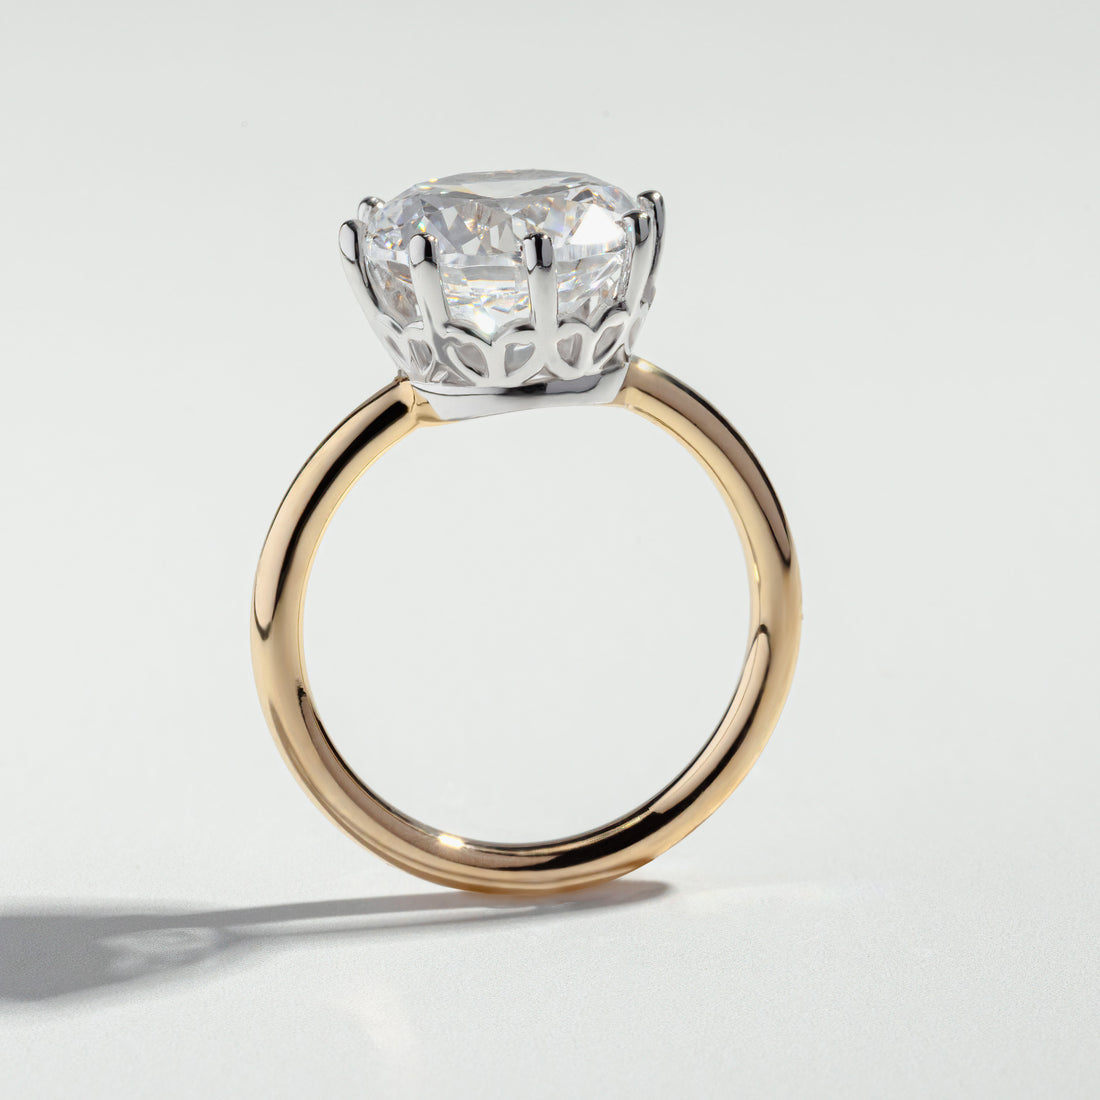 The Round Cut 5 Carat Diamond Ring